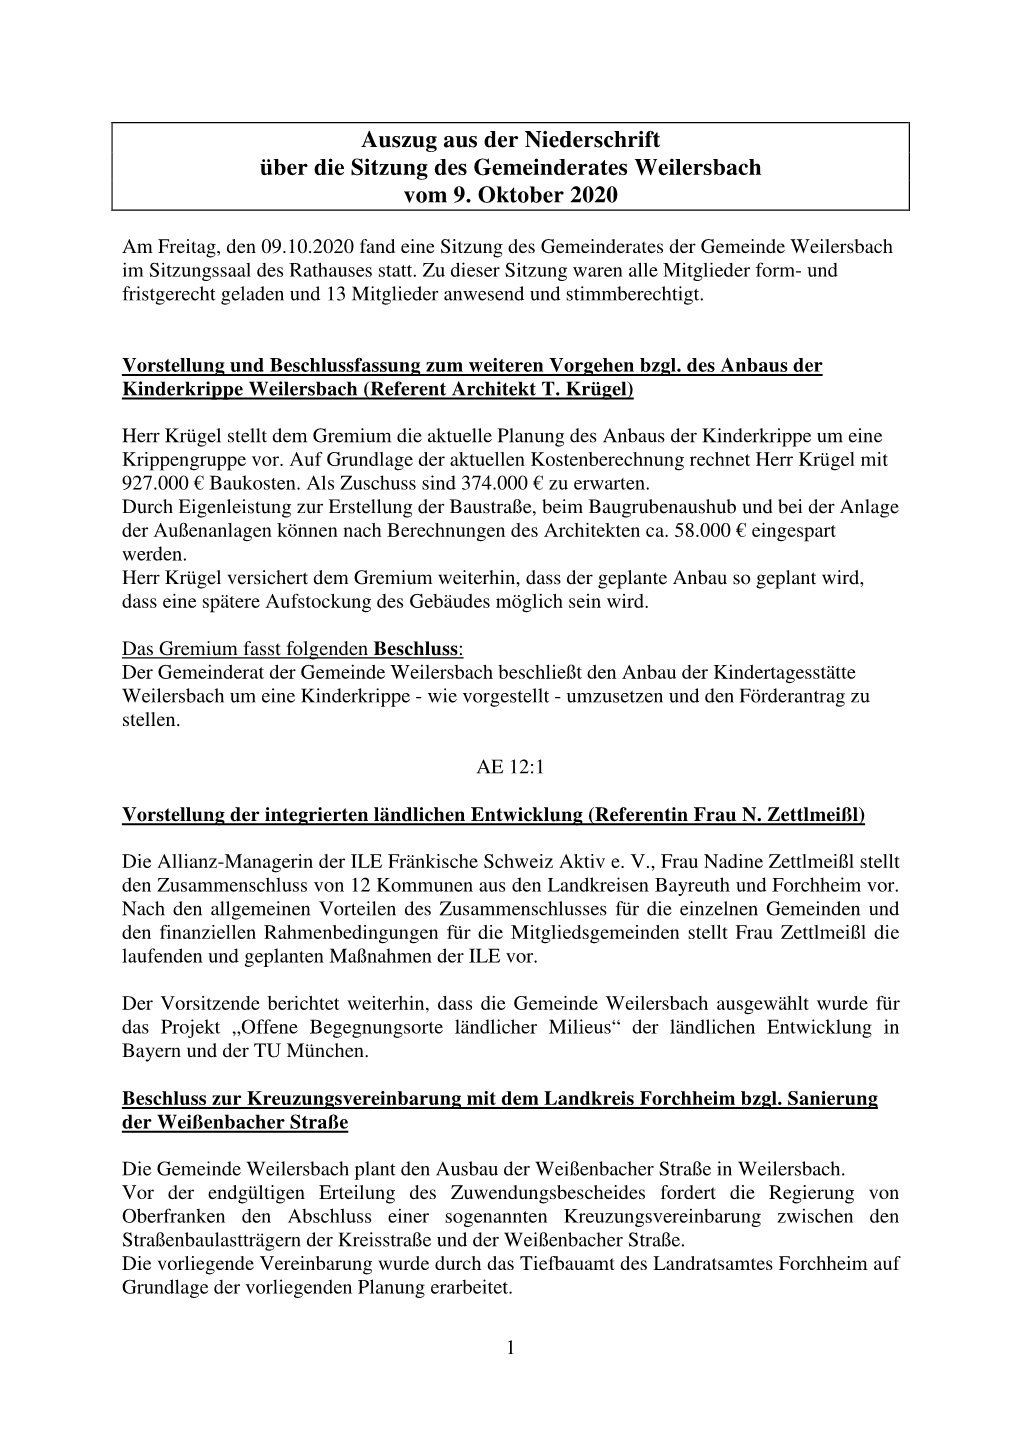 Auszug Öffentliche Sitzung Weilersbach Vom 9.10.2020